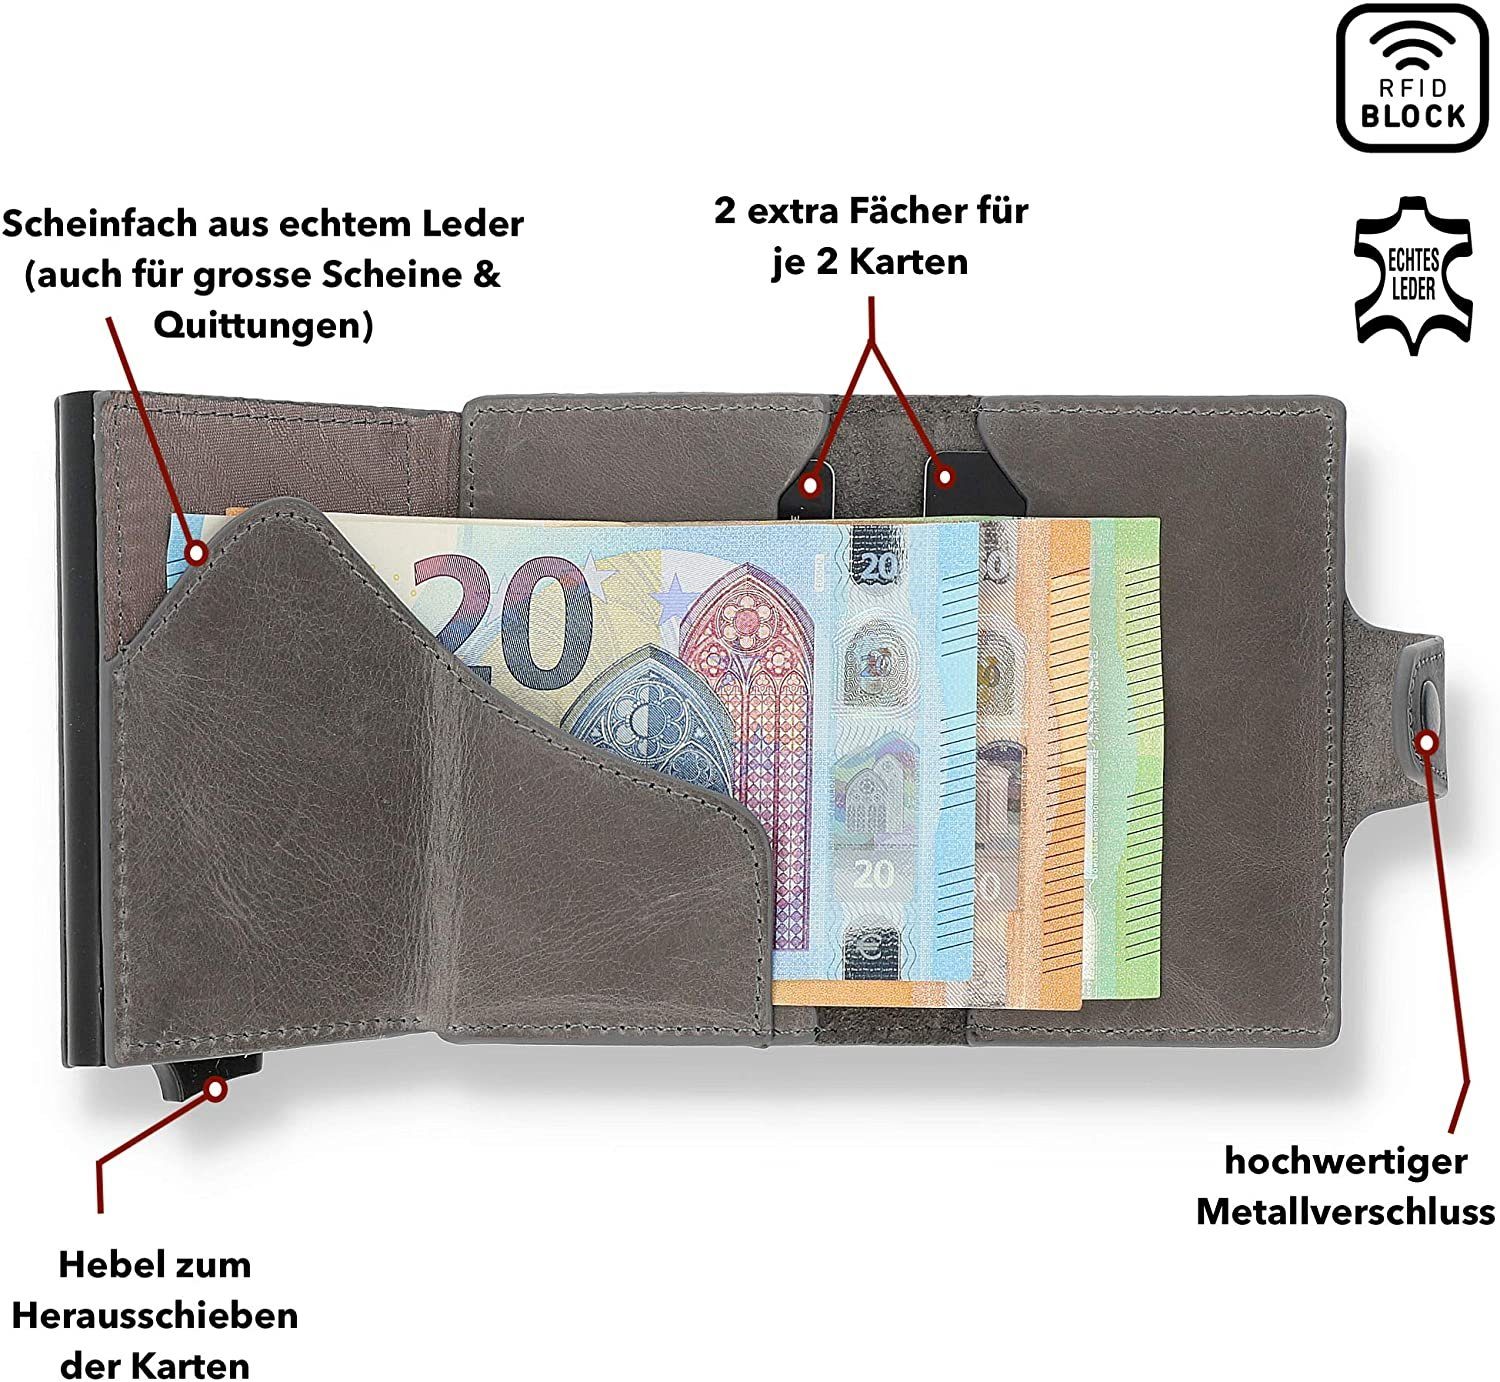 Solo Pelle Mini Geldbörse mit Münzfach zu Mondo Slim RFID 13 Made ohne Europe, Karten] echt Leder, in Steingrau Schutz [bis Wallet [RFID-Schutz